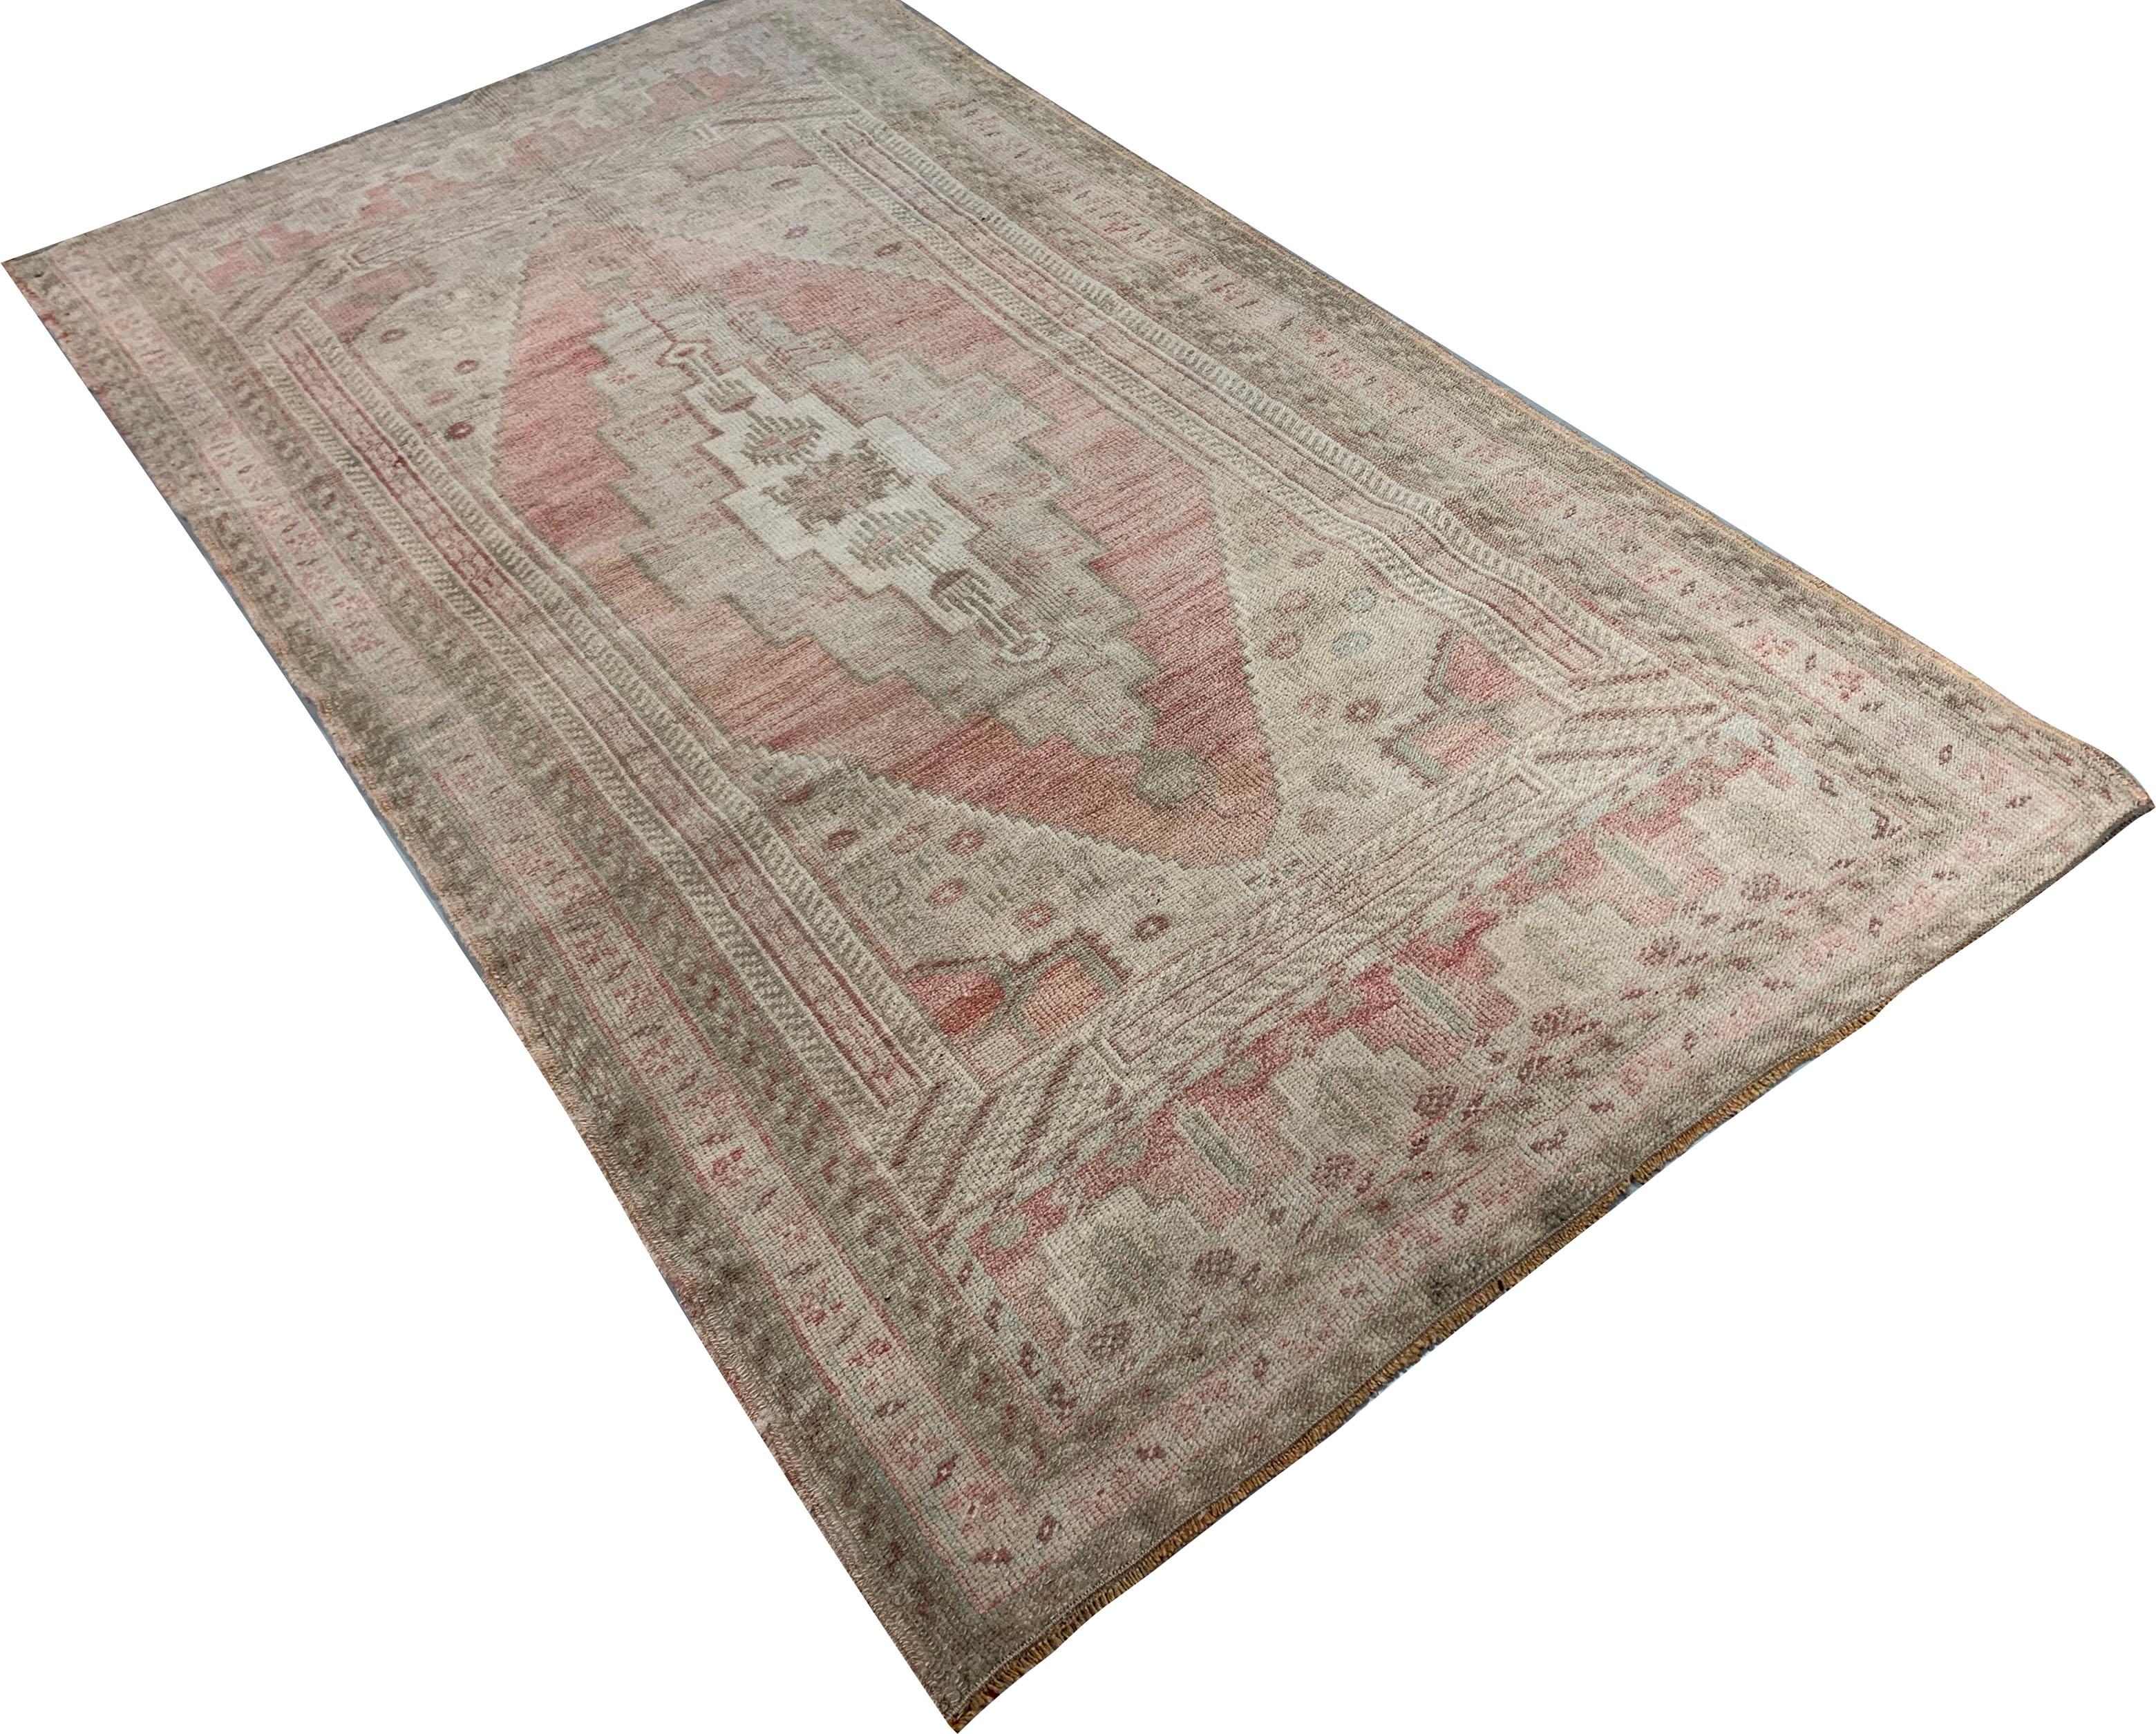 Vintage Türkisch Oushak Teppich Läufer, 3'4' x 6'1'. Oushaks sind bekannt für ihre sanften Paletten in Kombination mit exzentrischen Zeichnungen. Oushak in der Westtürkei hat die längste ununterbrochene Geschichte der Teppichweberei, die mindestens